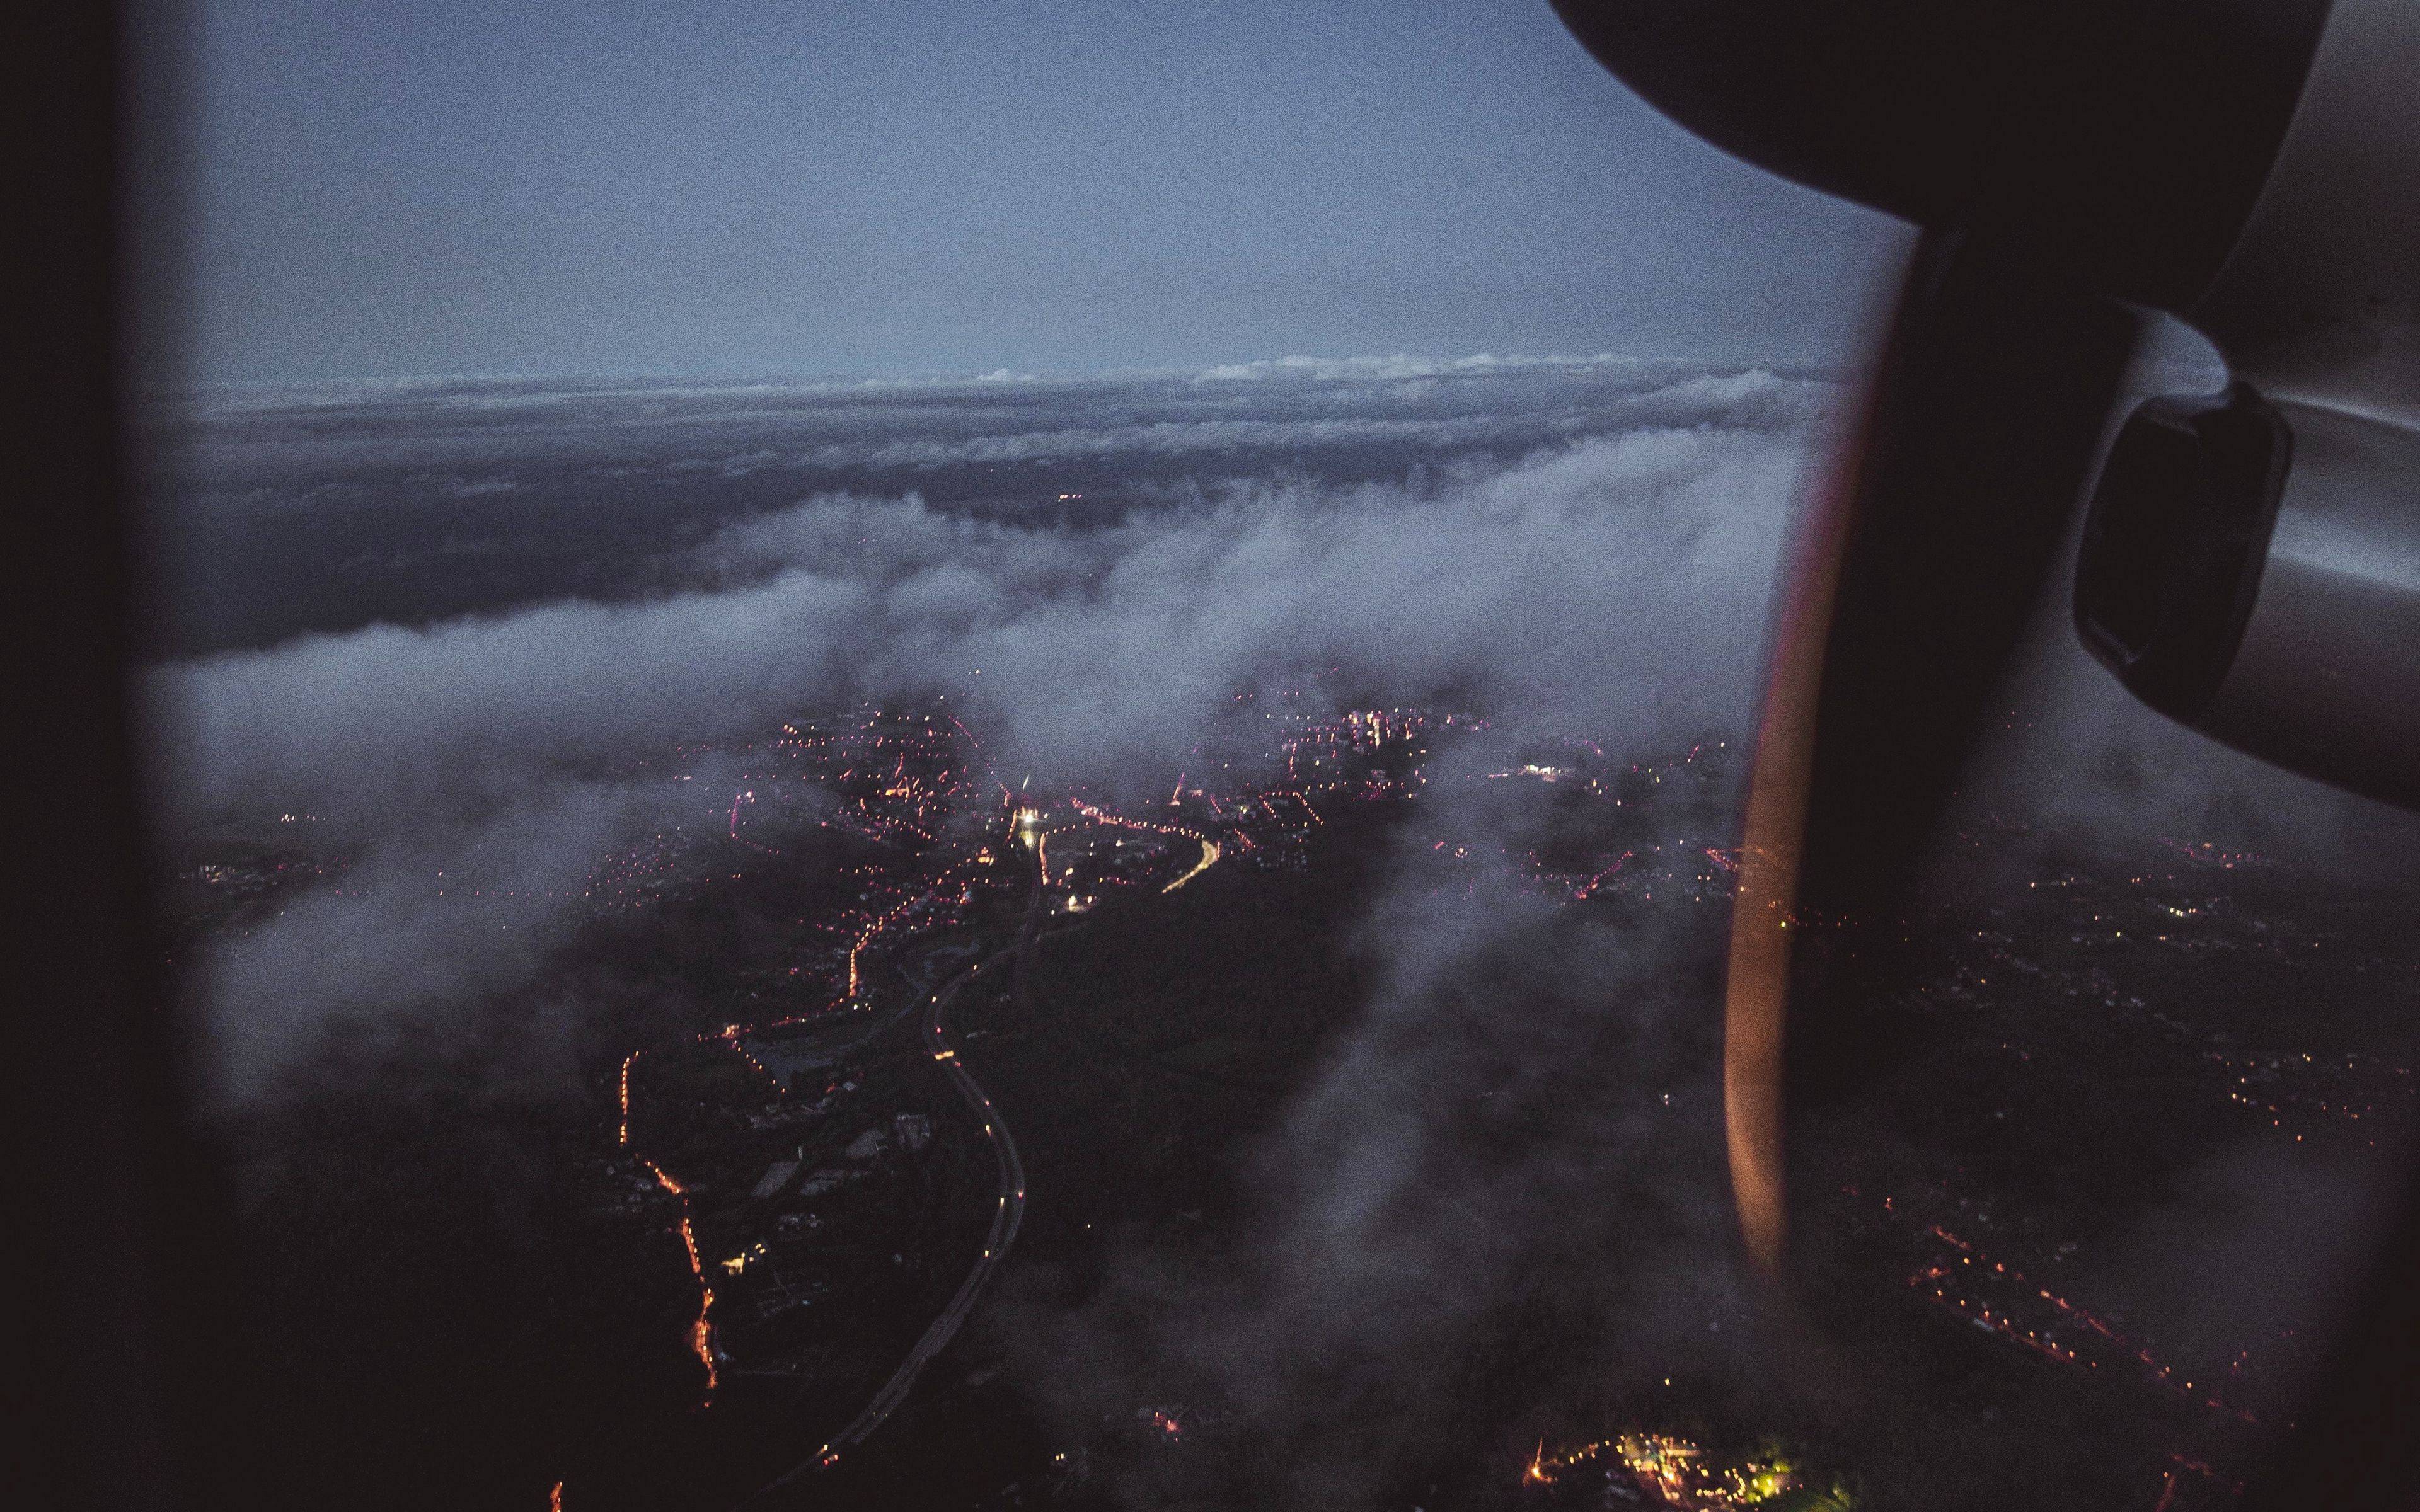 Фото земли - красивые виды из окна самолета